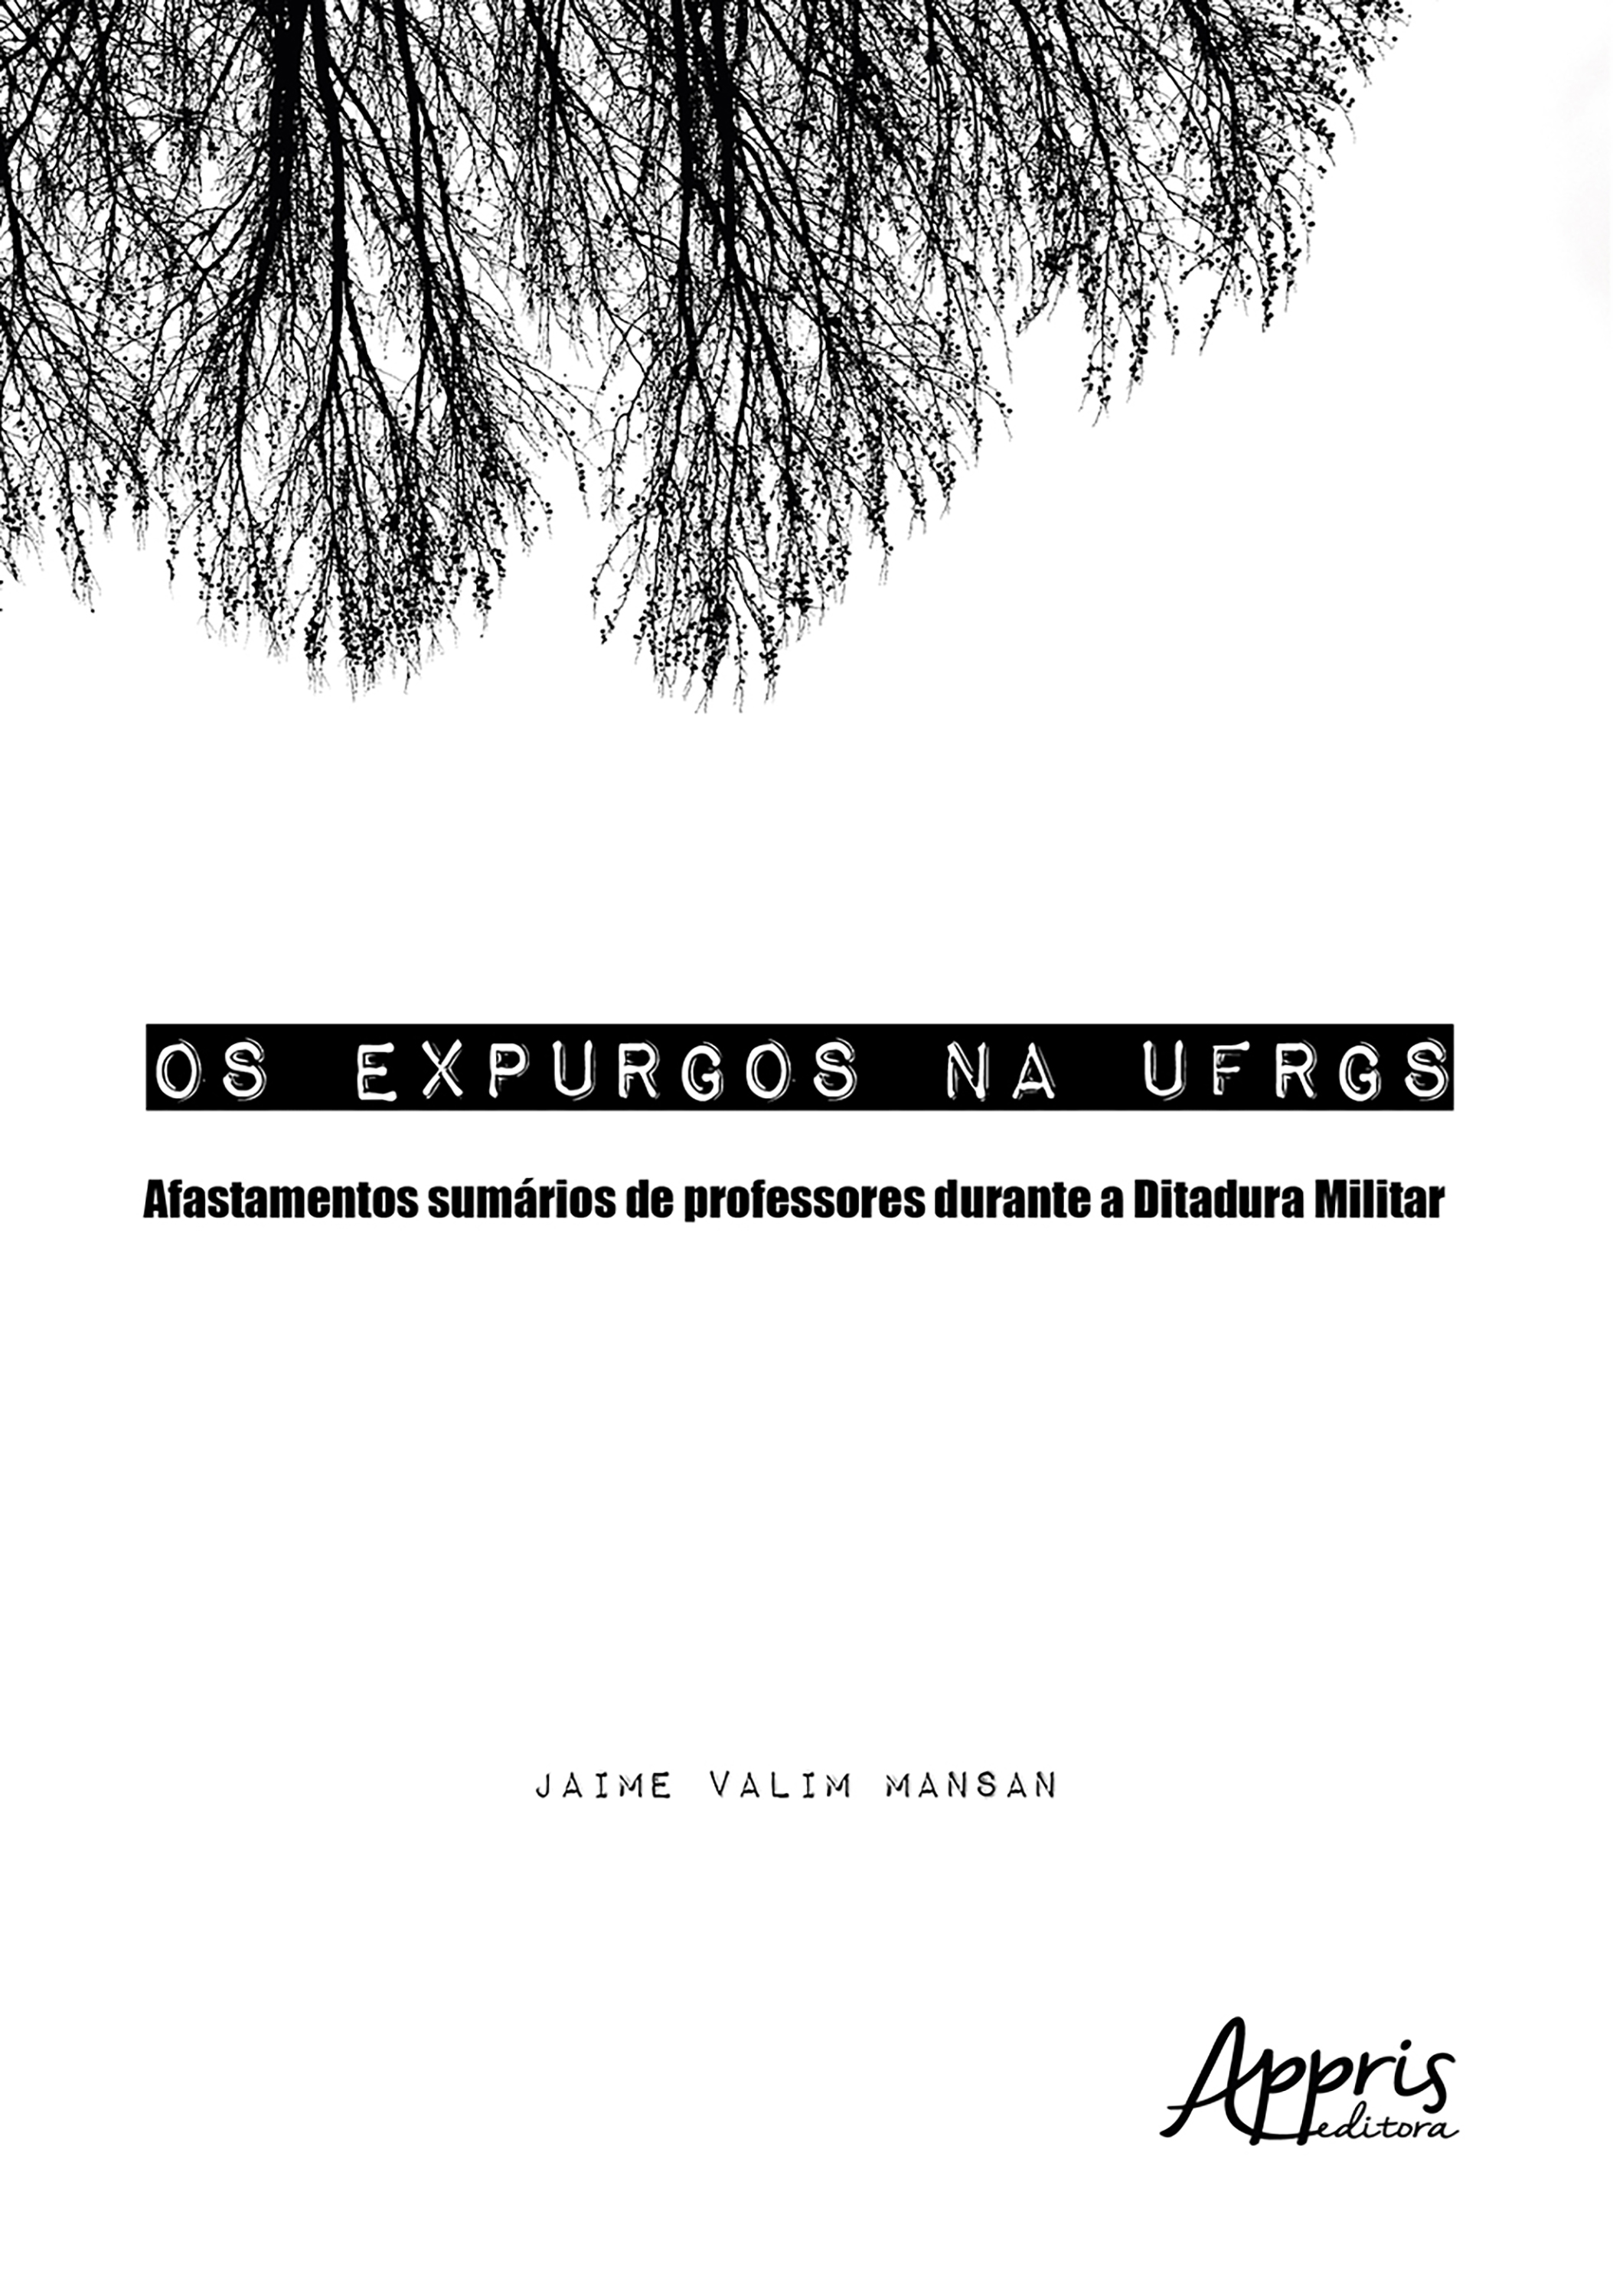 Os Expurgos na UFRGS: Afastamentos Sumários de Professores Durante a Ditadura Militar